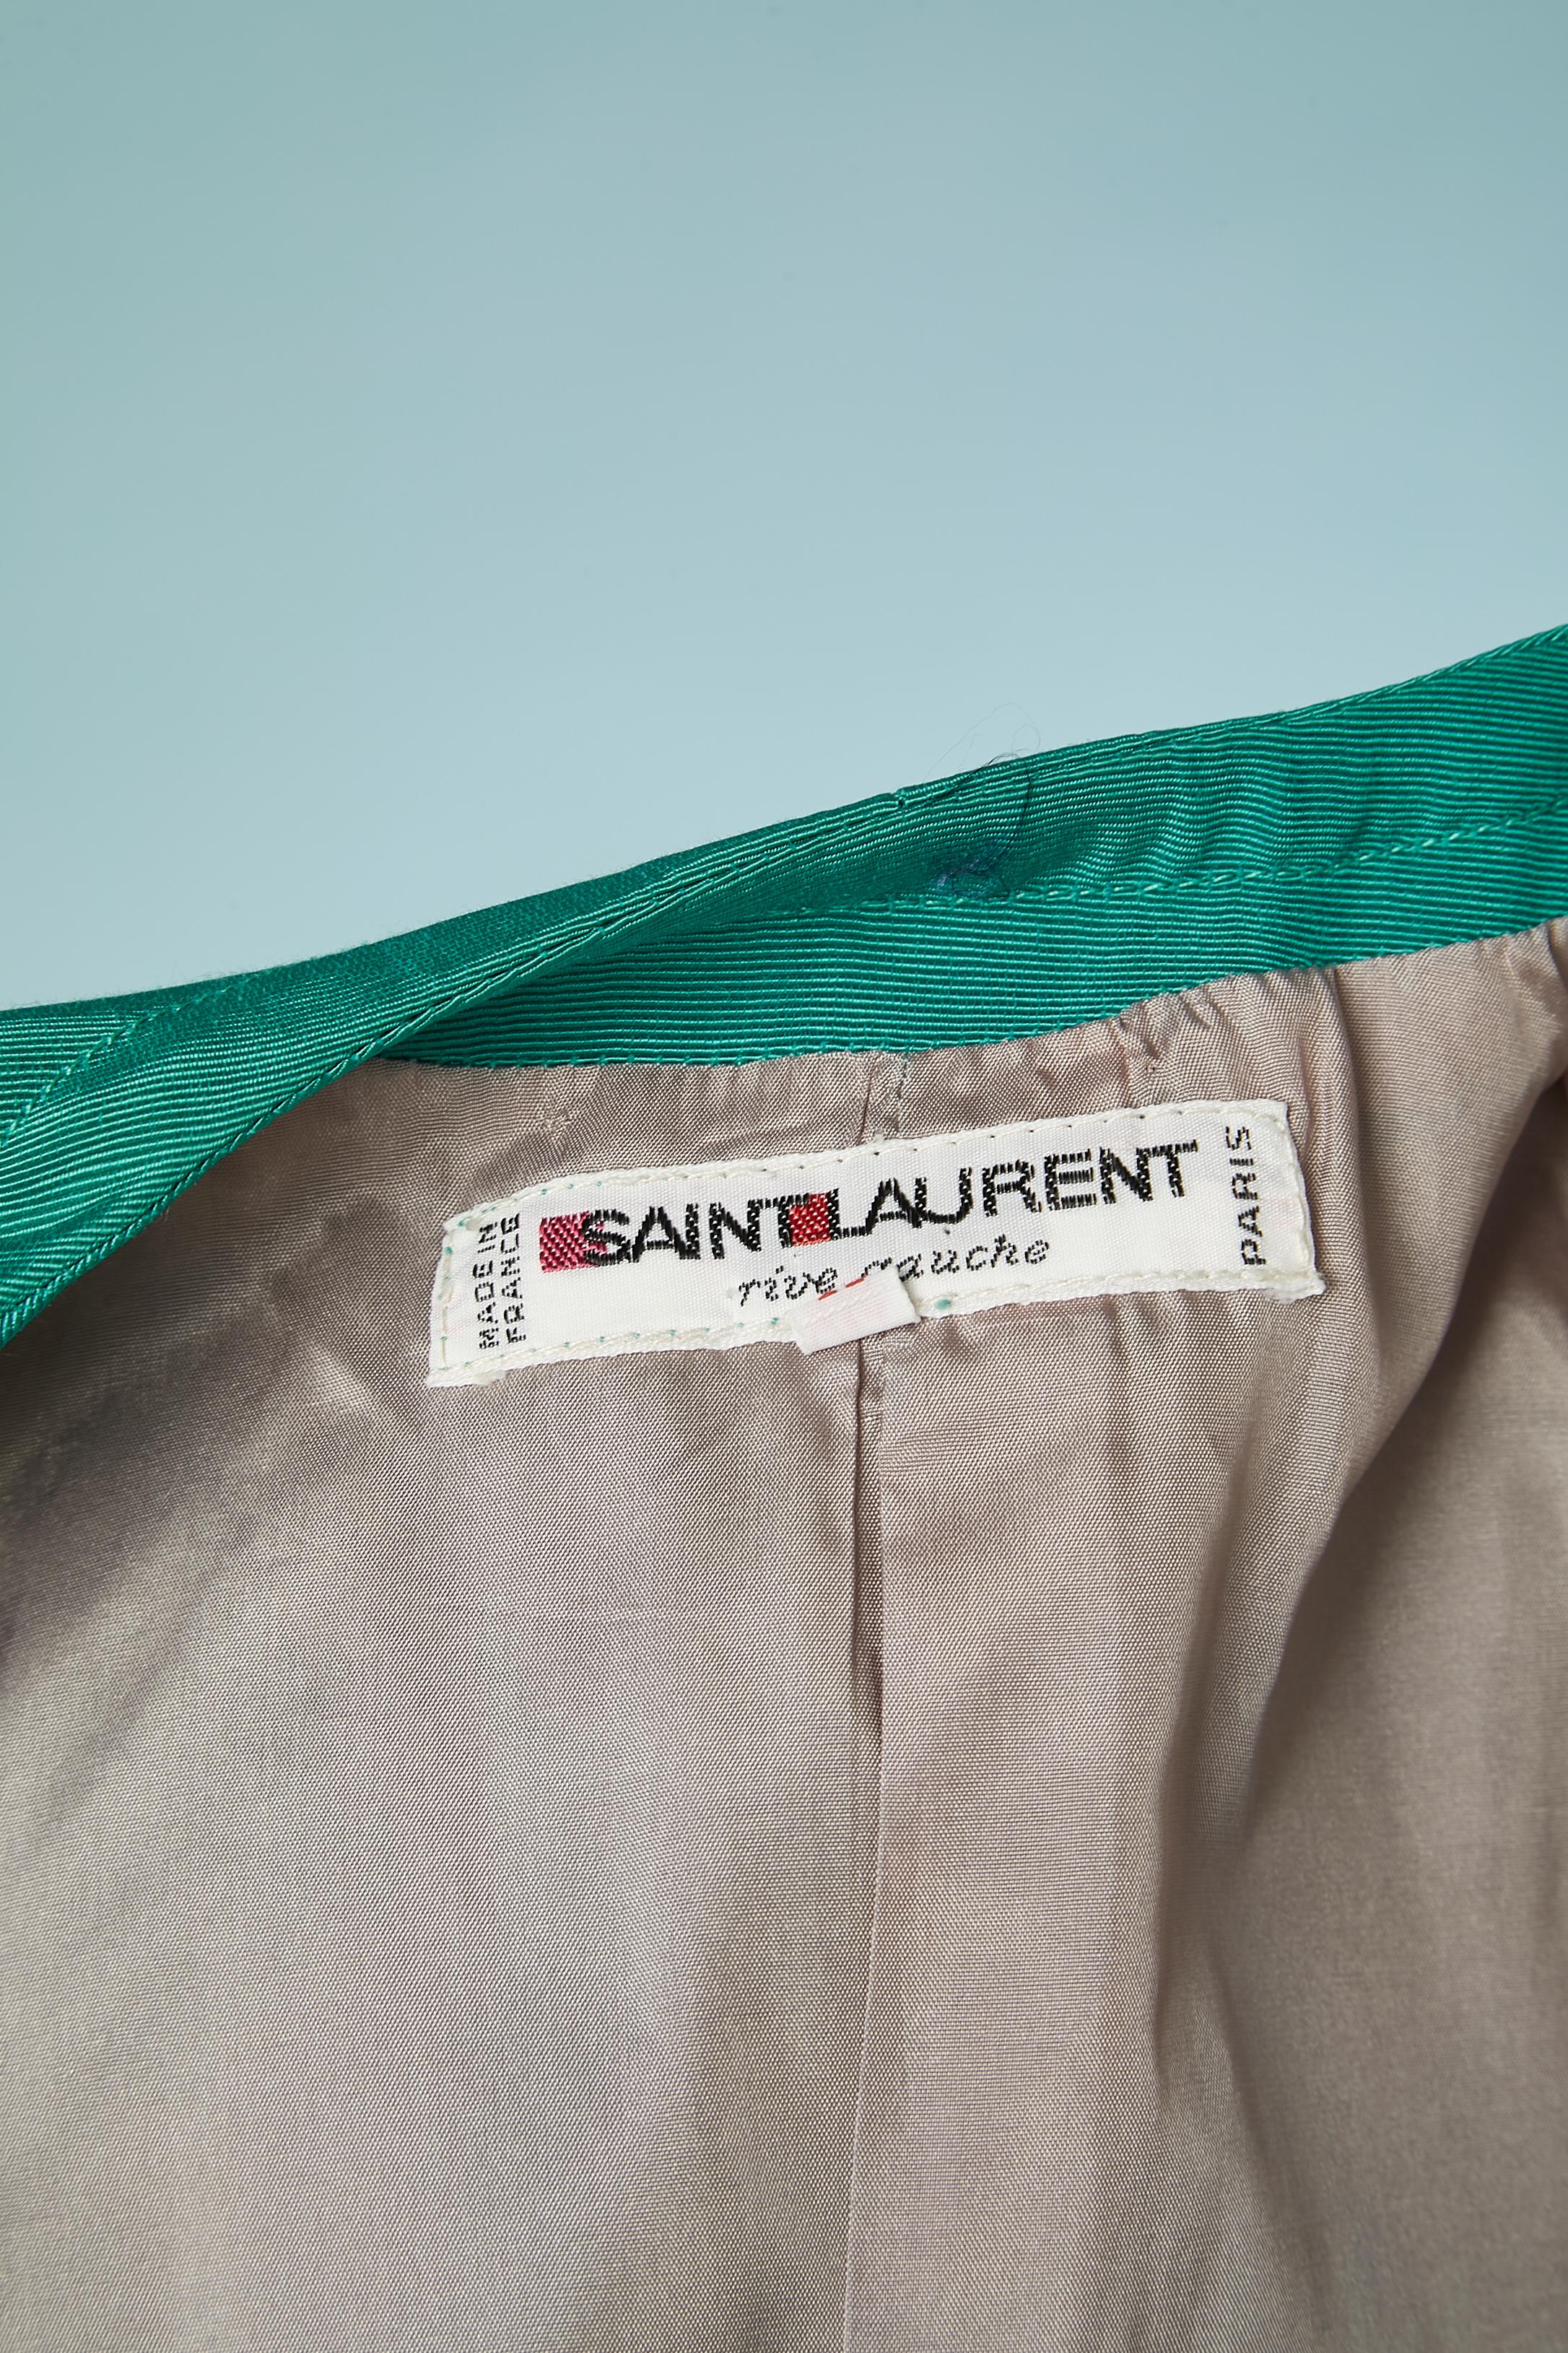 Green Ottoman evening skirt-suit  Saint Laurent Rive Gauche  For Sale 4